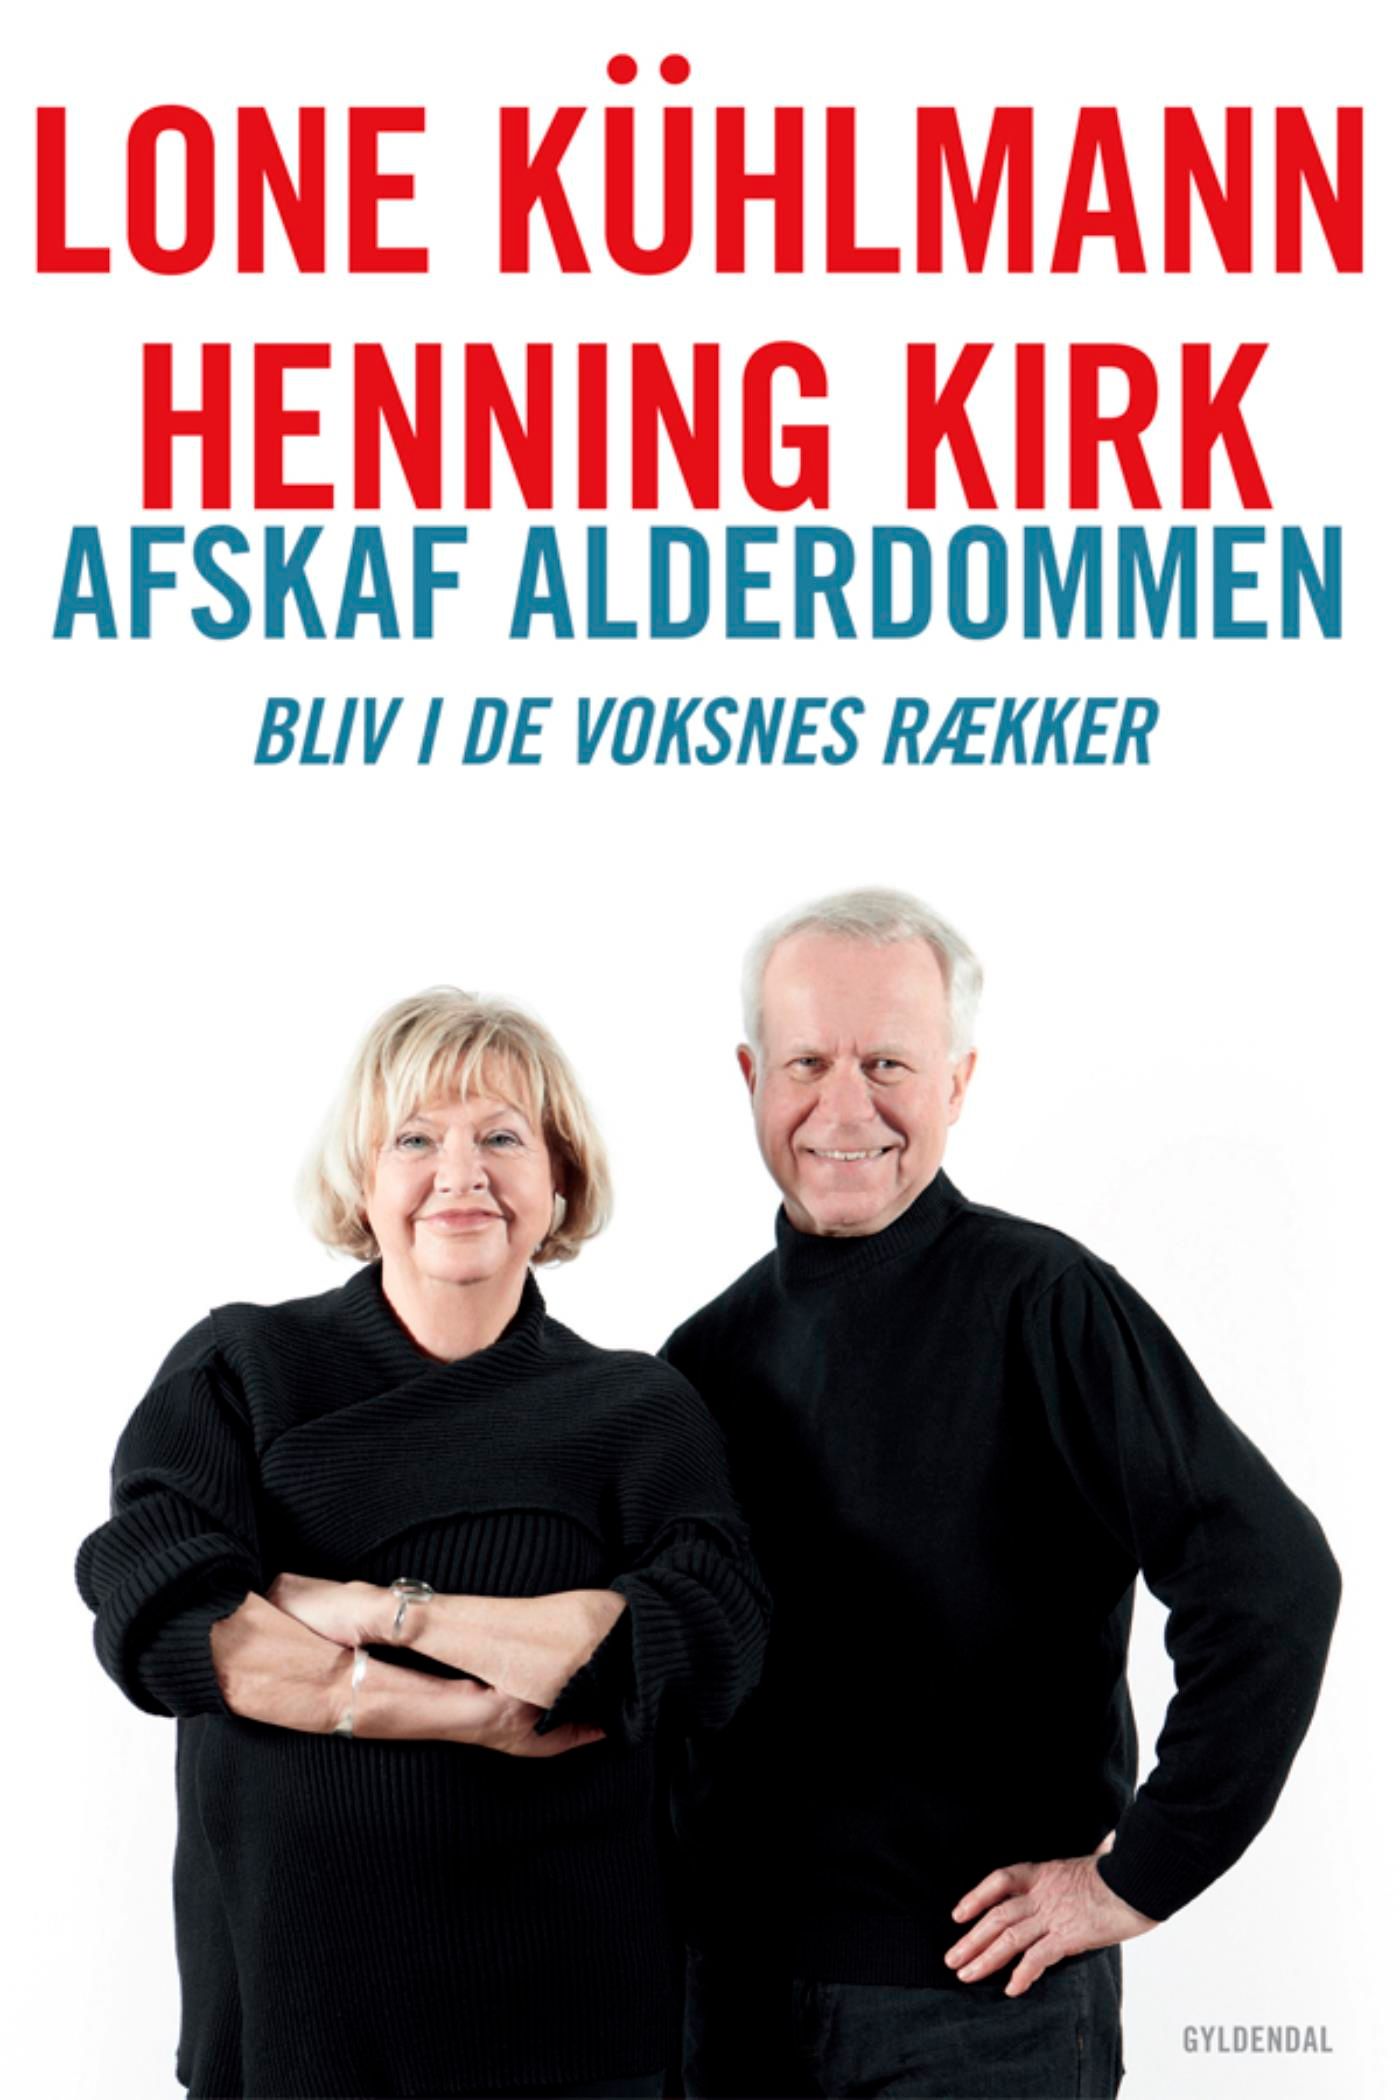 Afskaf alderdommen, e-bog af Henning Kirk, Lone Kühlmann